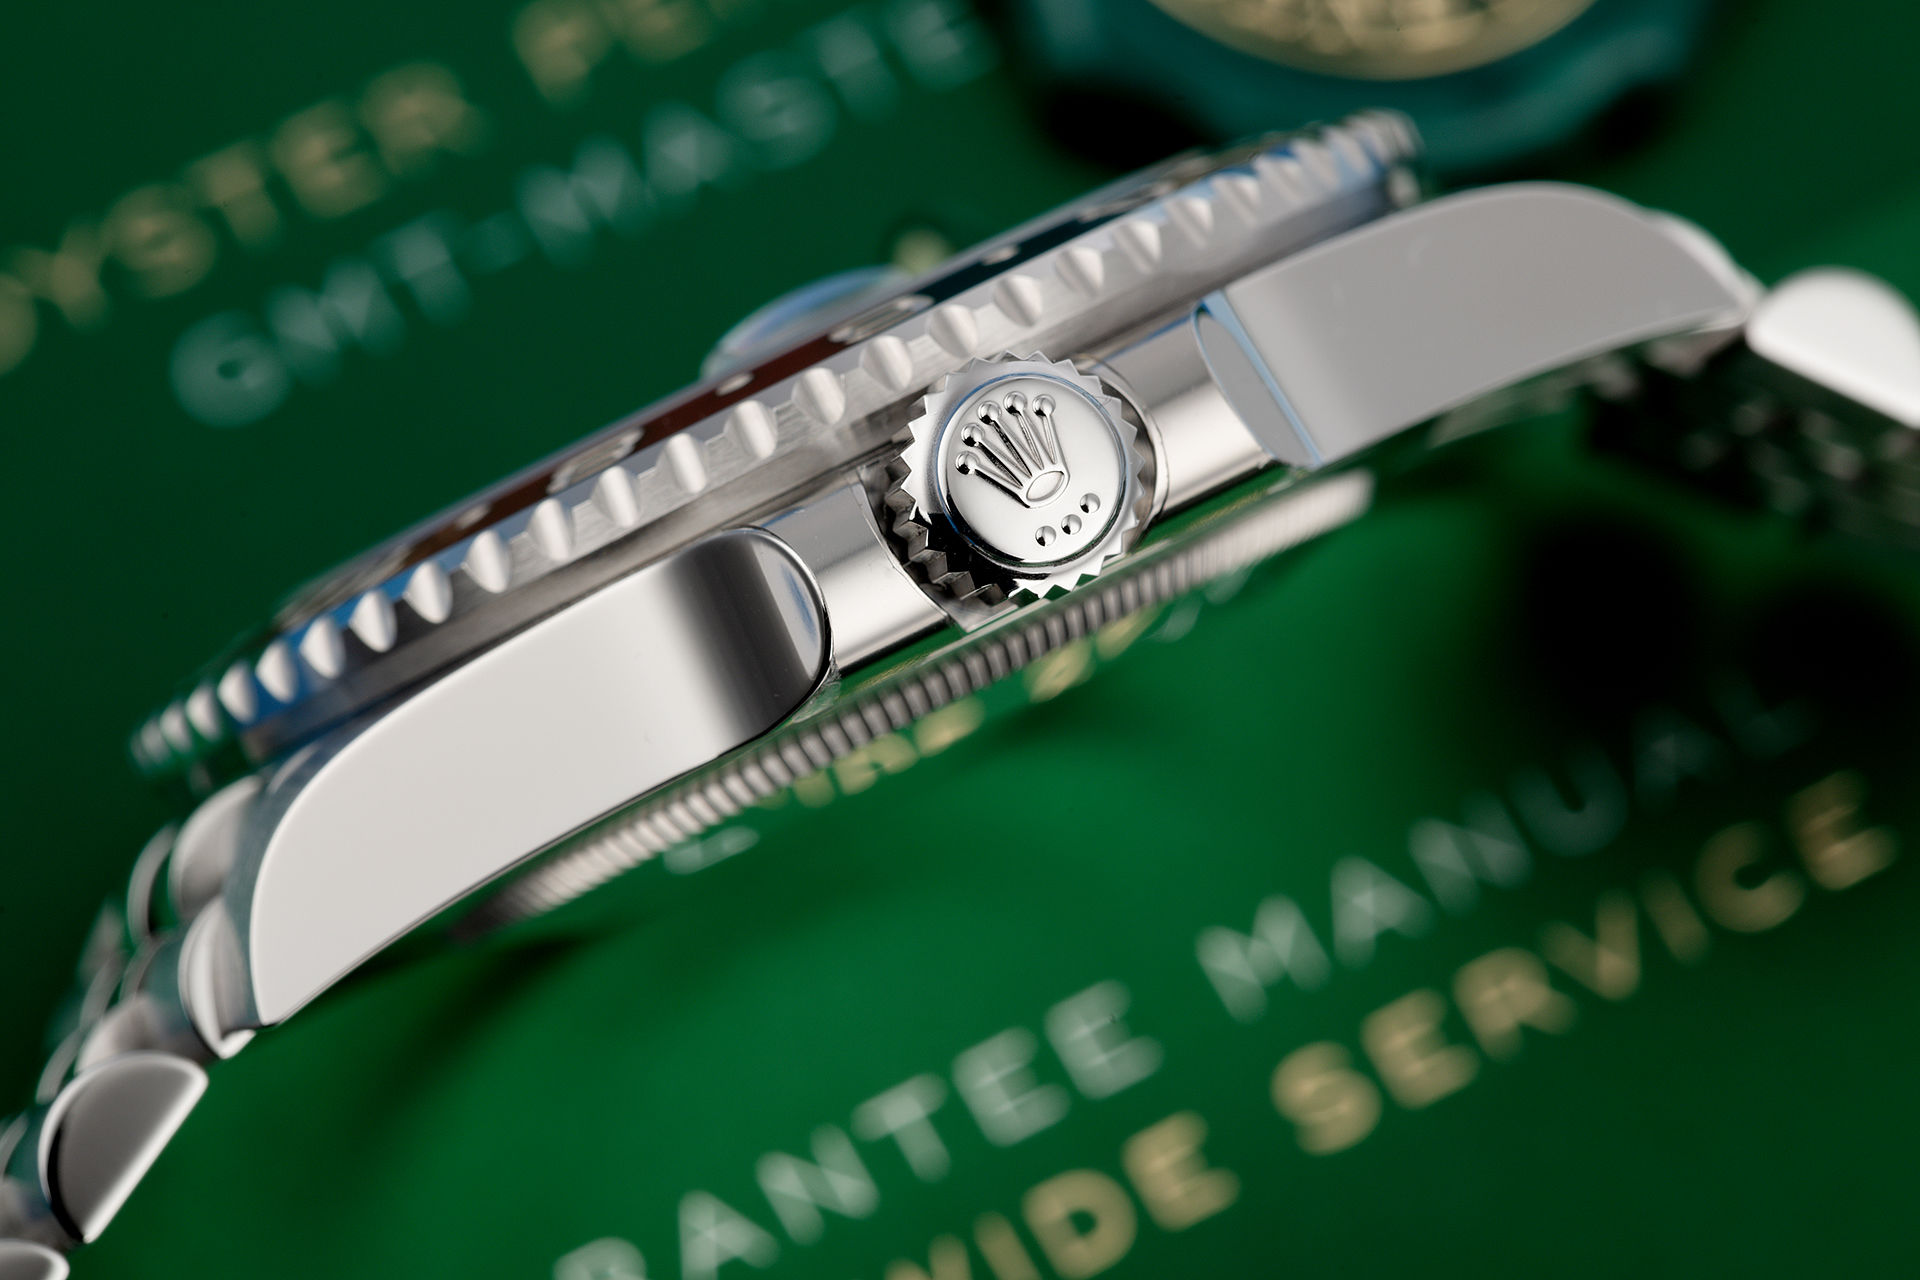 ref 126710BLRO | Brand New '5 Year Warranty' | Rolex GMT-Master II